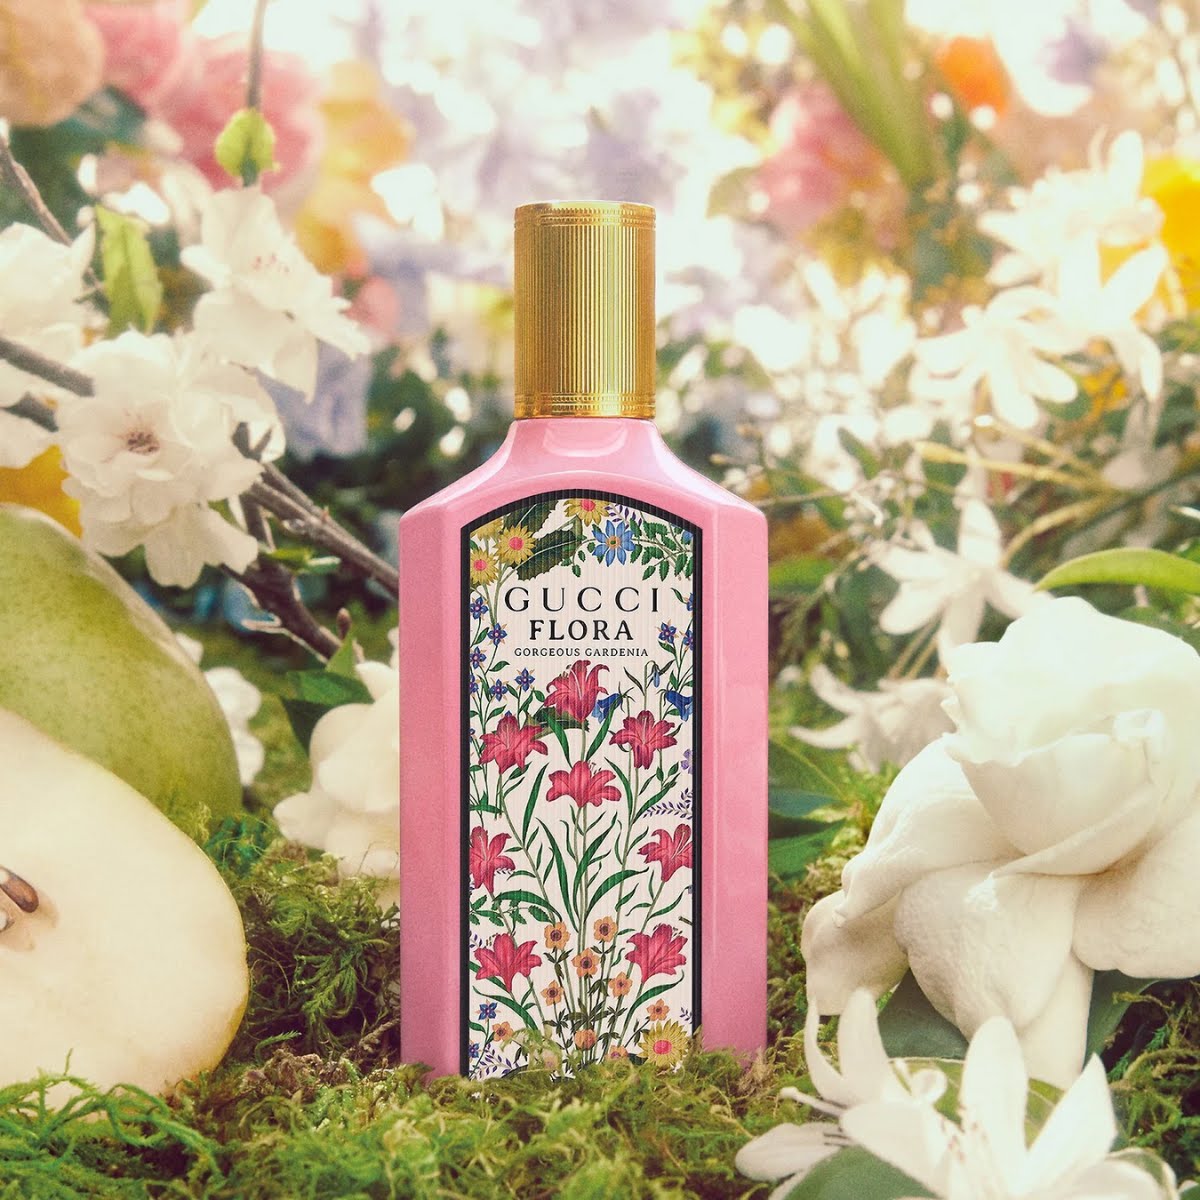 Gucci Flora Gorgeous Gardenia Eau de Parfum For Women, €80